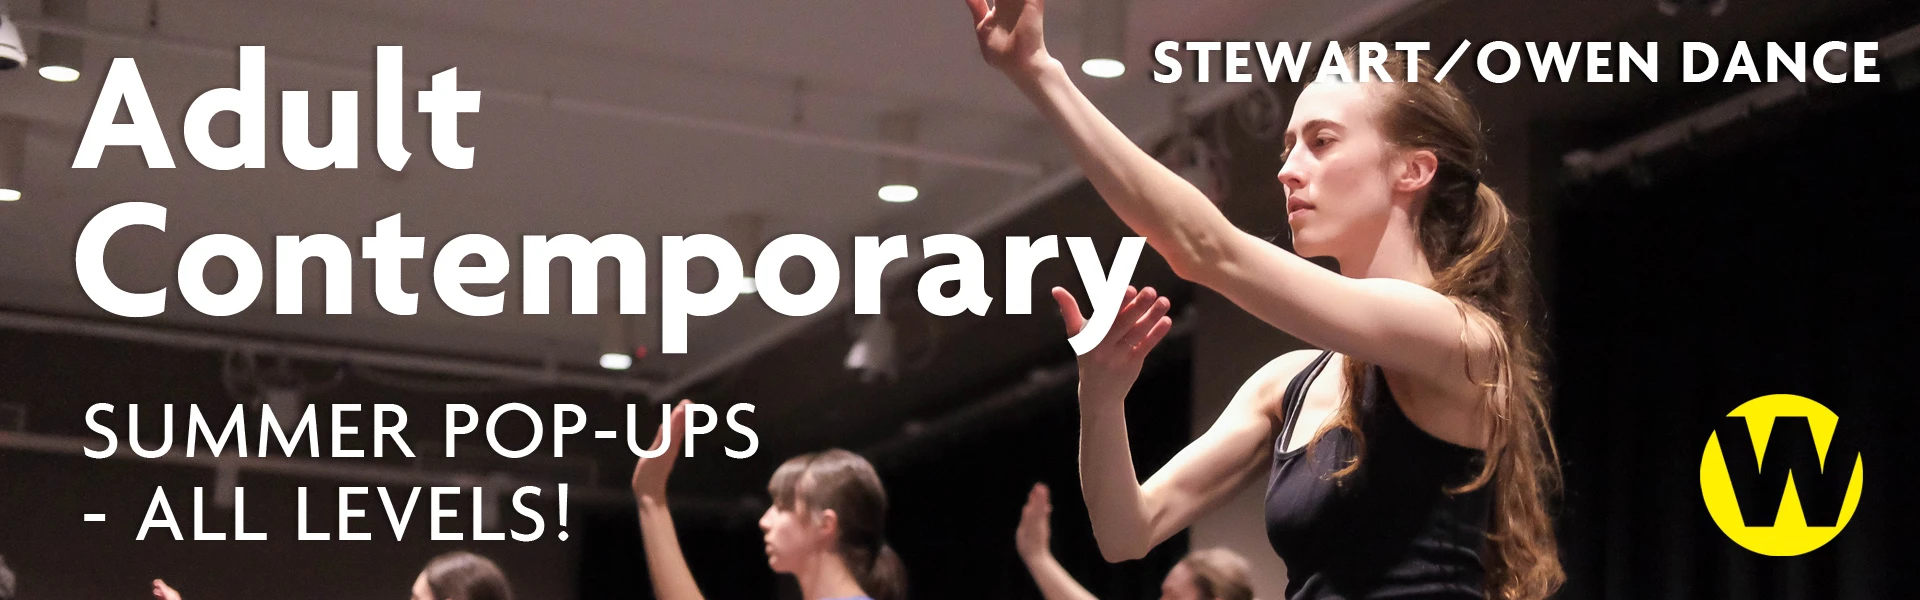 Stewart/Owen Dance Adult Contemporary — Summer Pop-ups, All Levels!